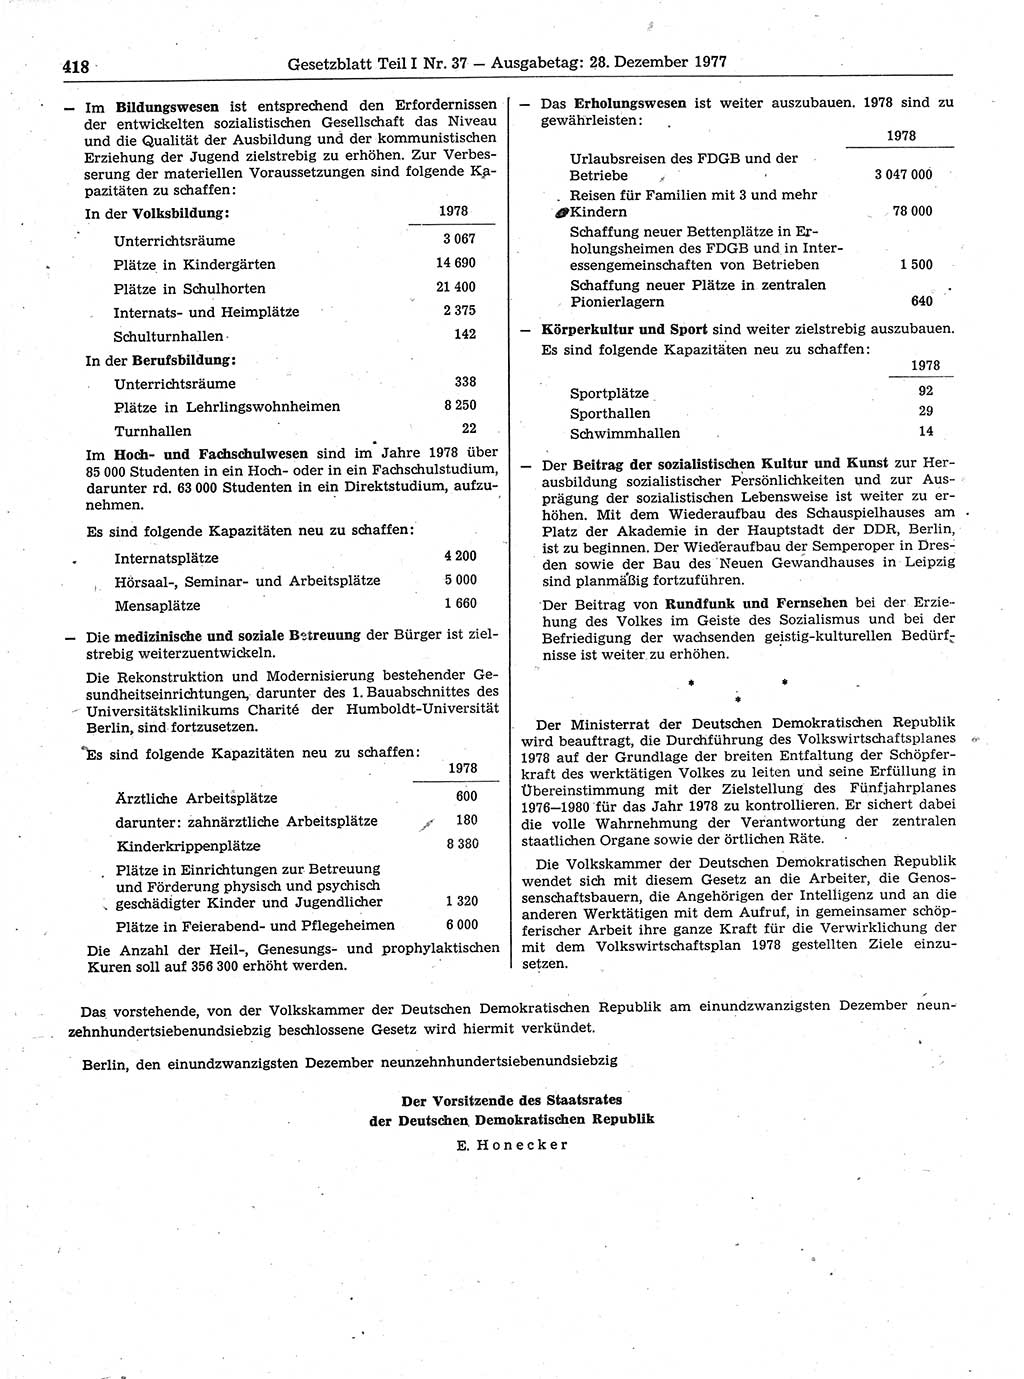 Gesetzblatt (GBl.) der Deutschen Demokratischen Republik (DDR) Teil Ⅰ 1977, Seite 418 (GBl. DDR Ⅰ 1977, S. 418)